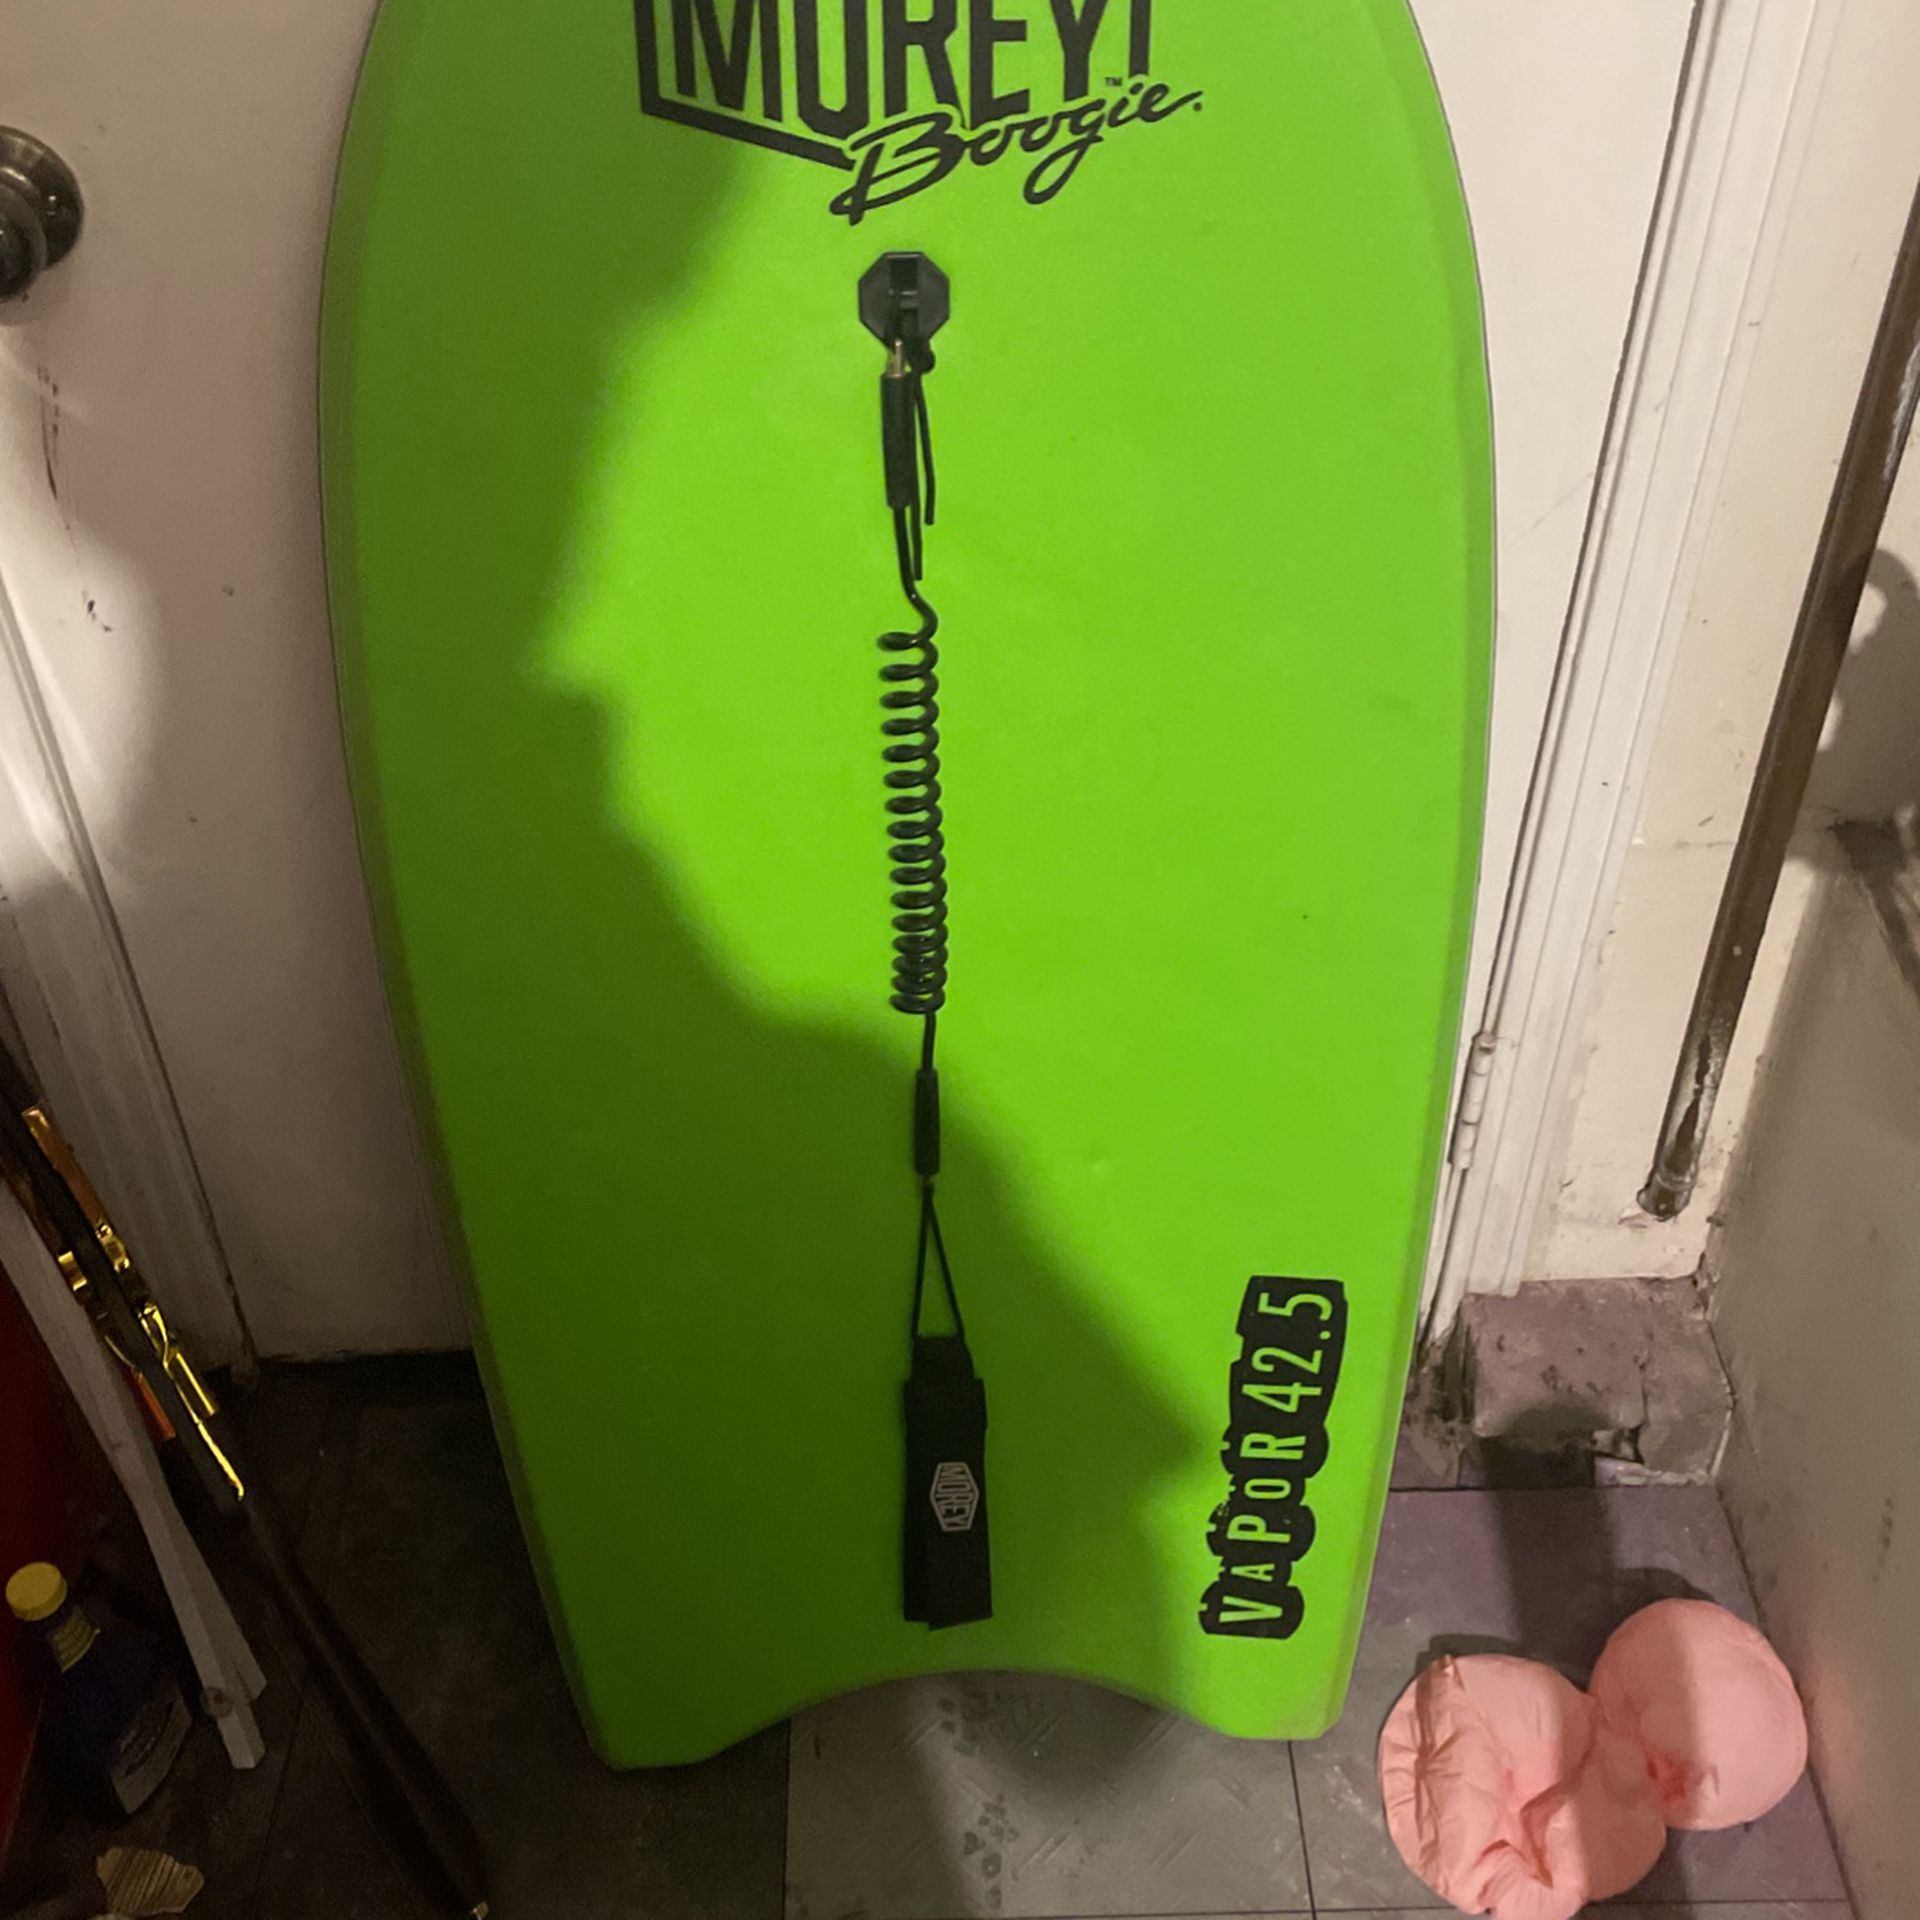 boogie board